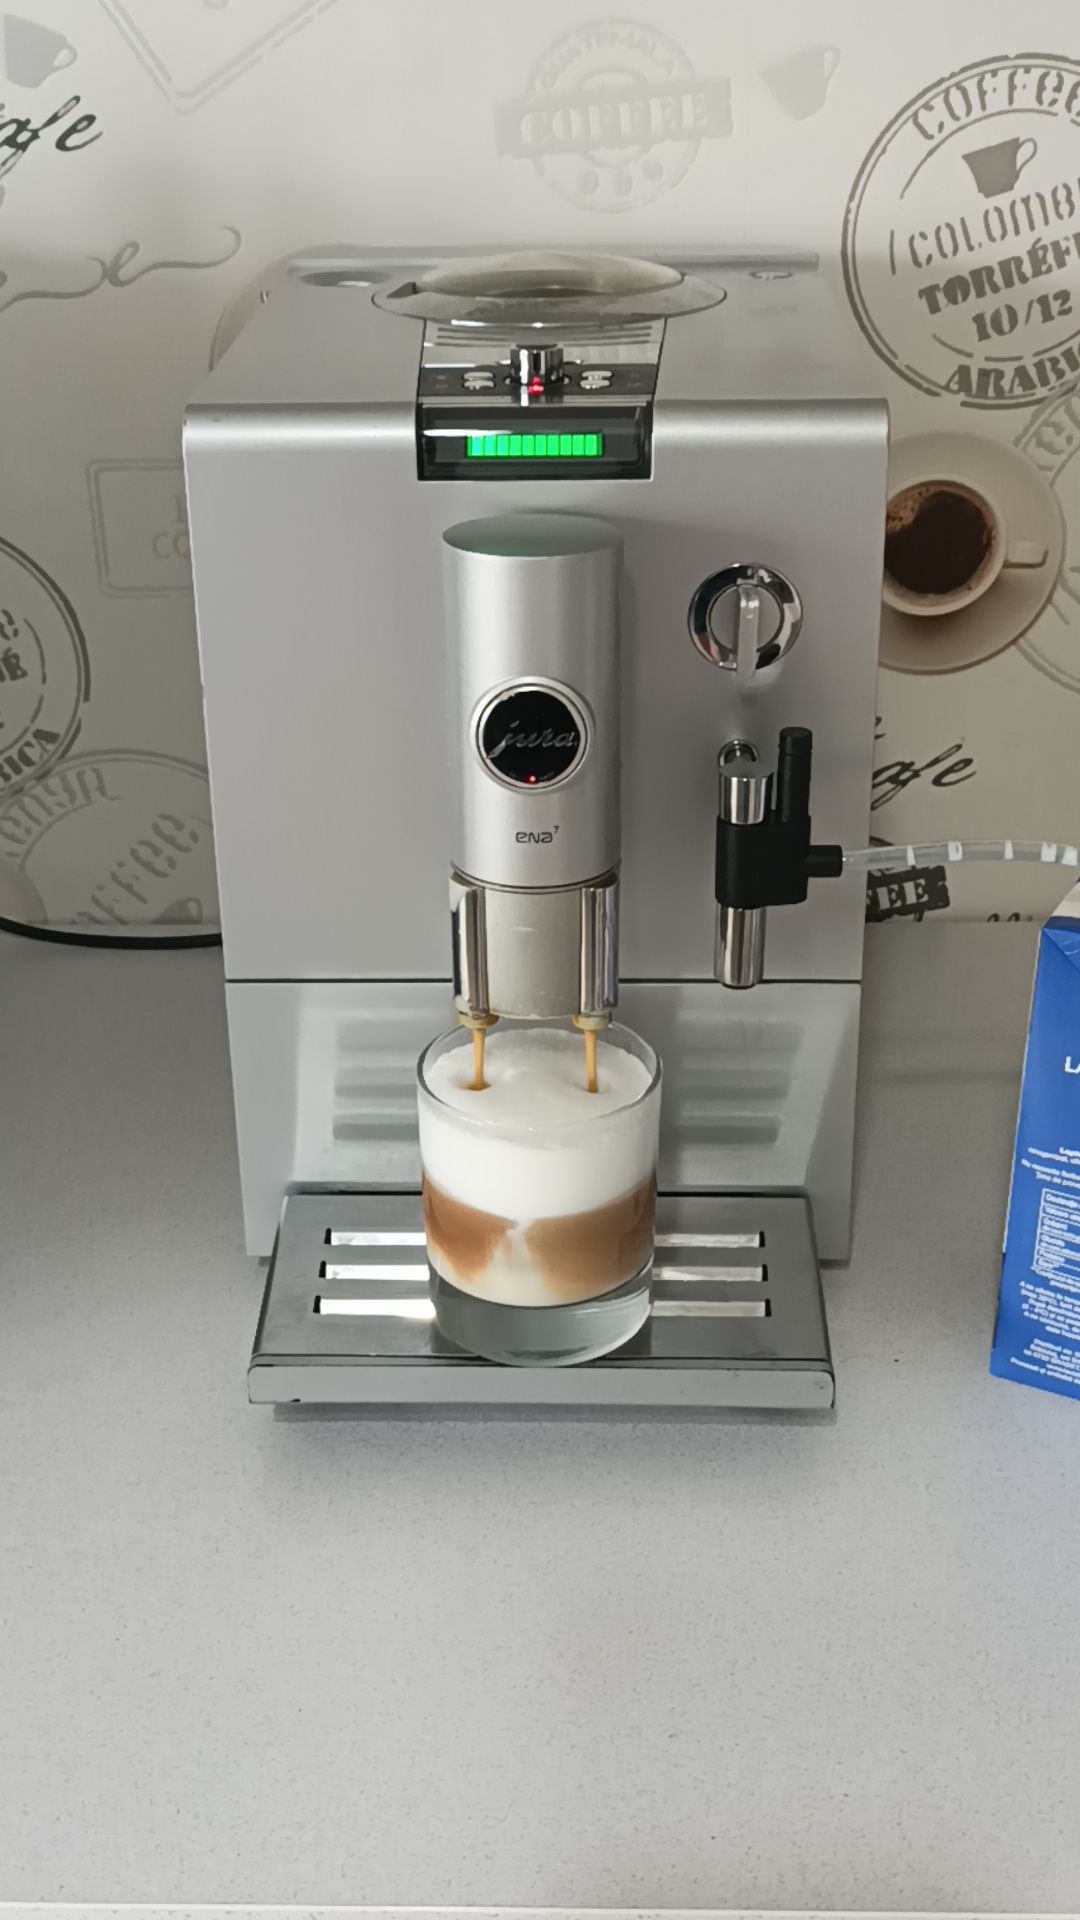 Espressor expresor aparat cafea Jura